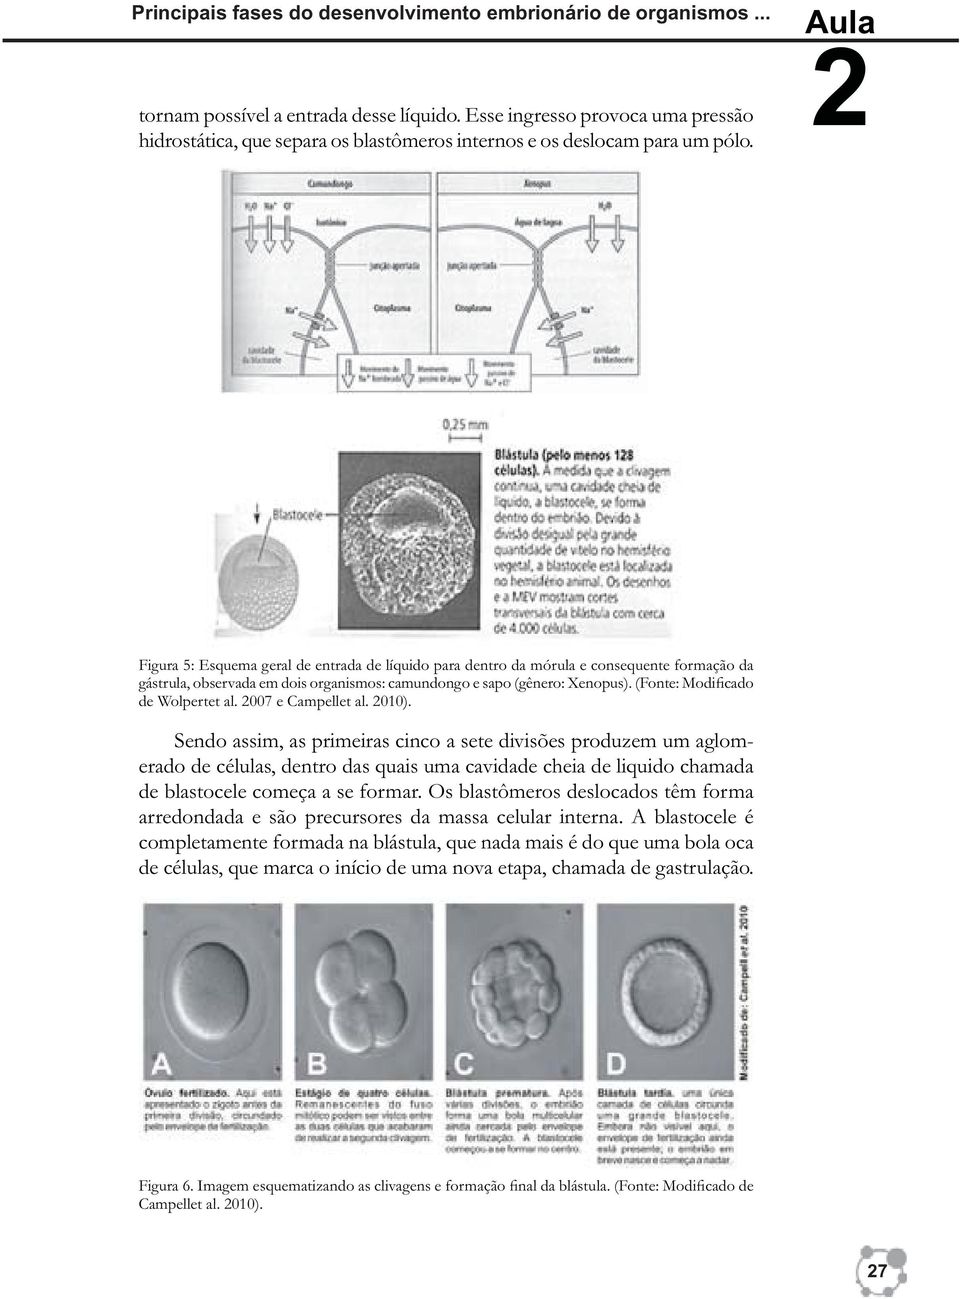 Aula Figura 5: Esquema geral de entrada de líquido para dentro da mórula e consequente formação da gástrula, observada em dois organismos: camundongo e sapo (gênero: Xenopus).